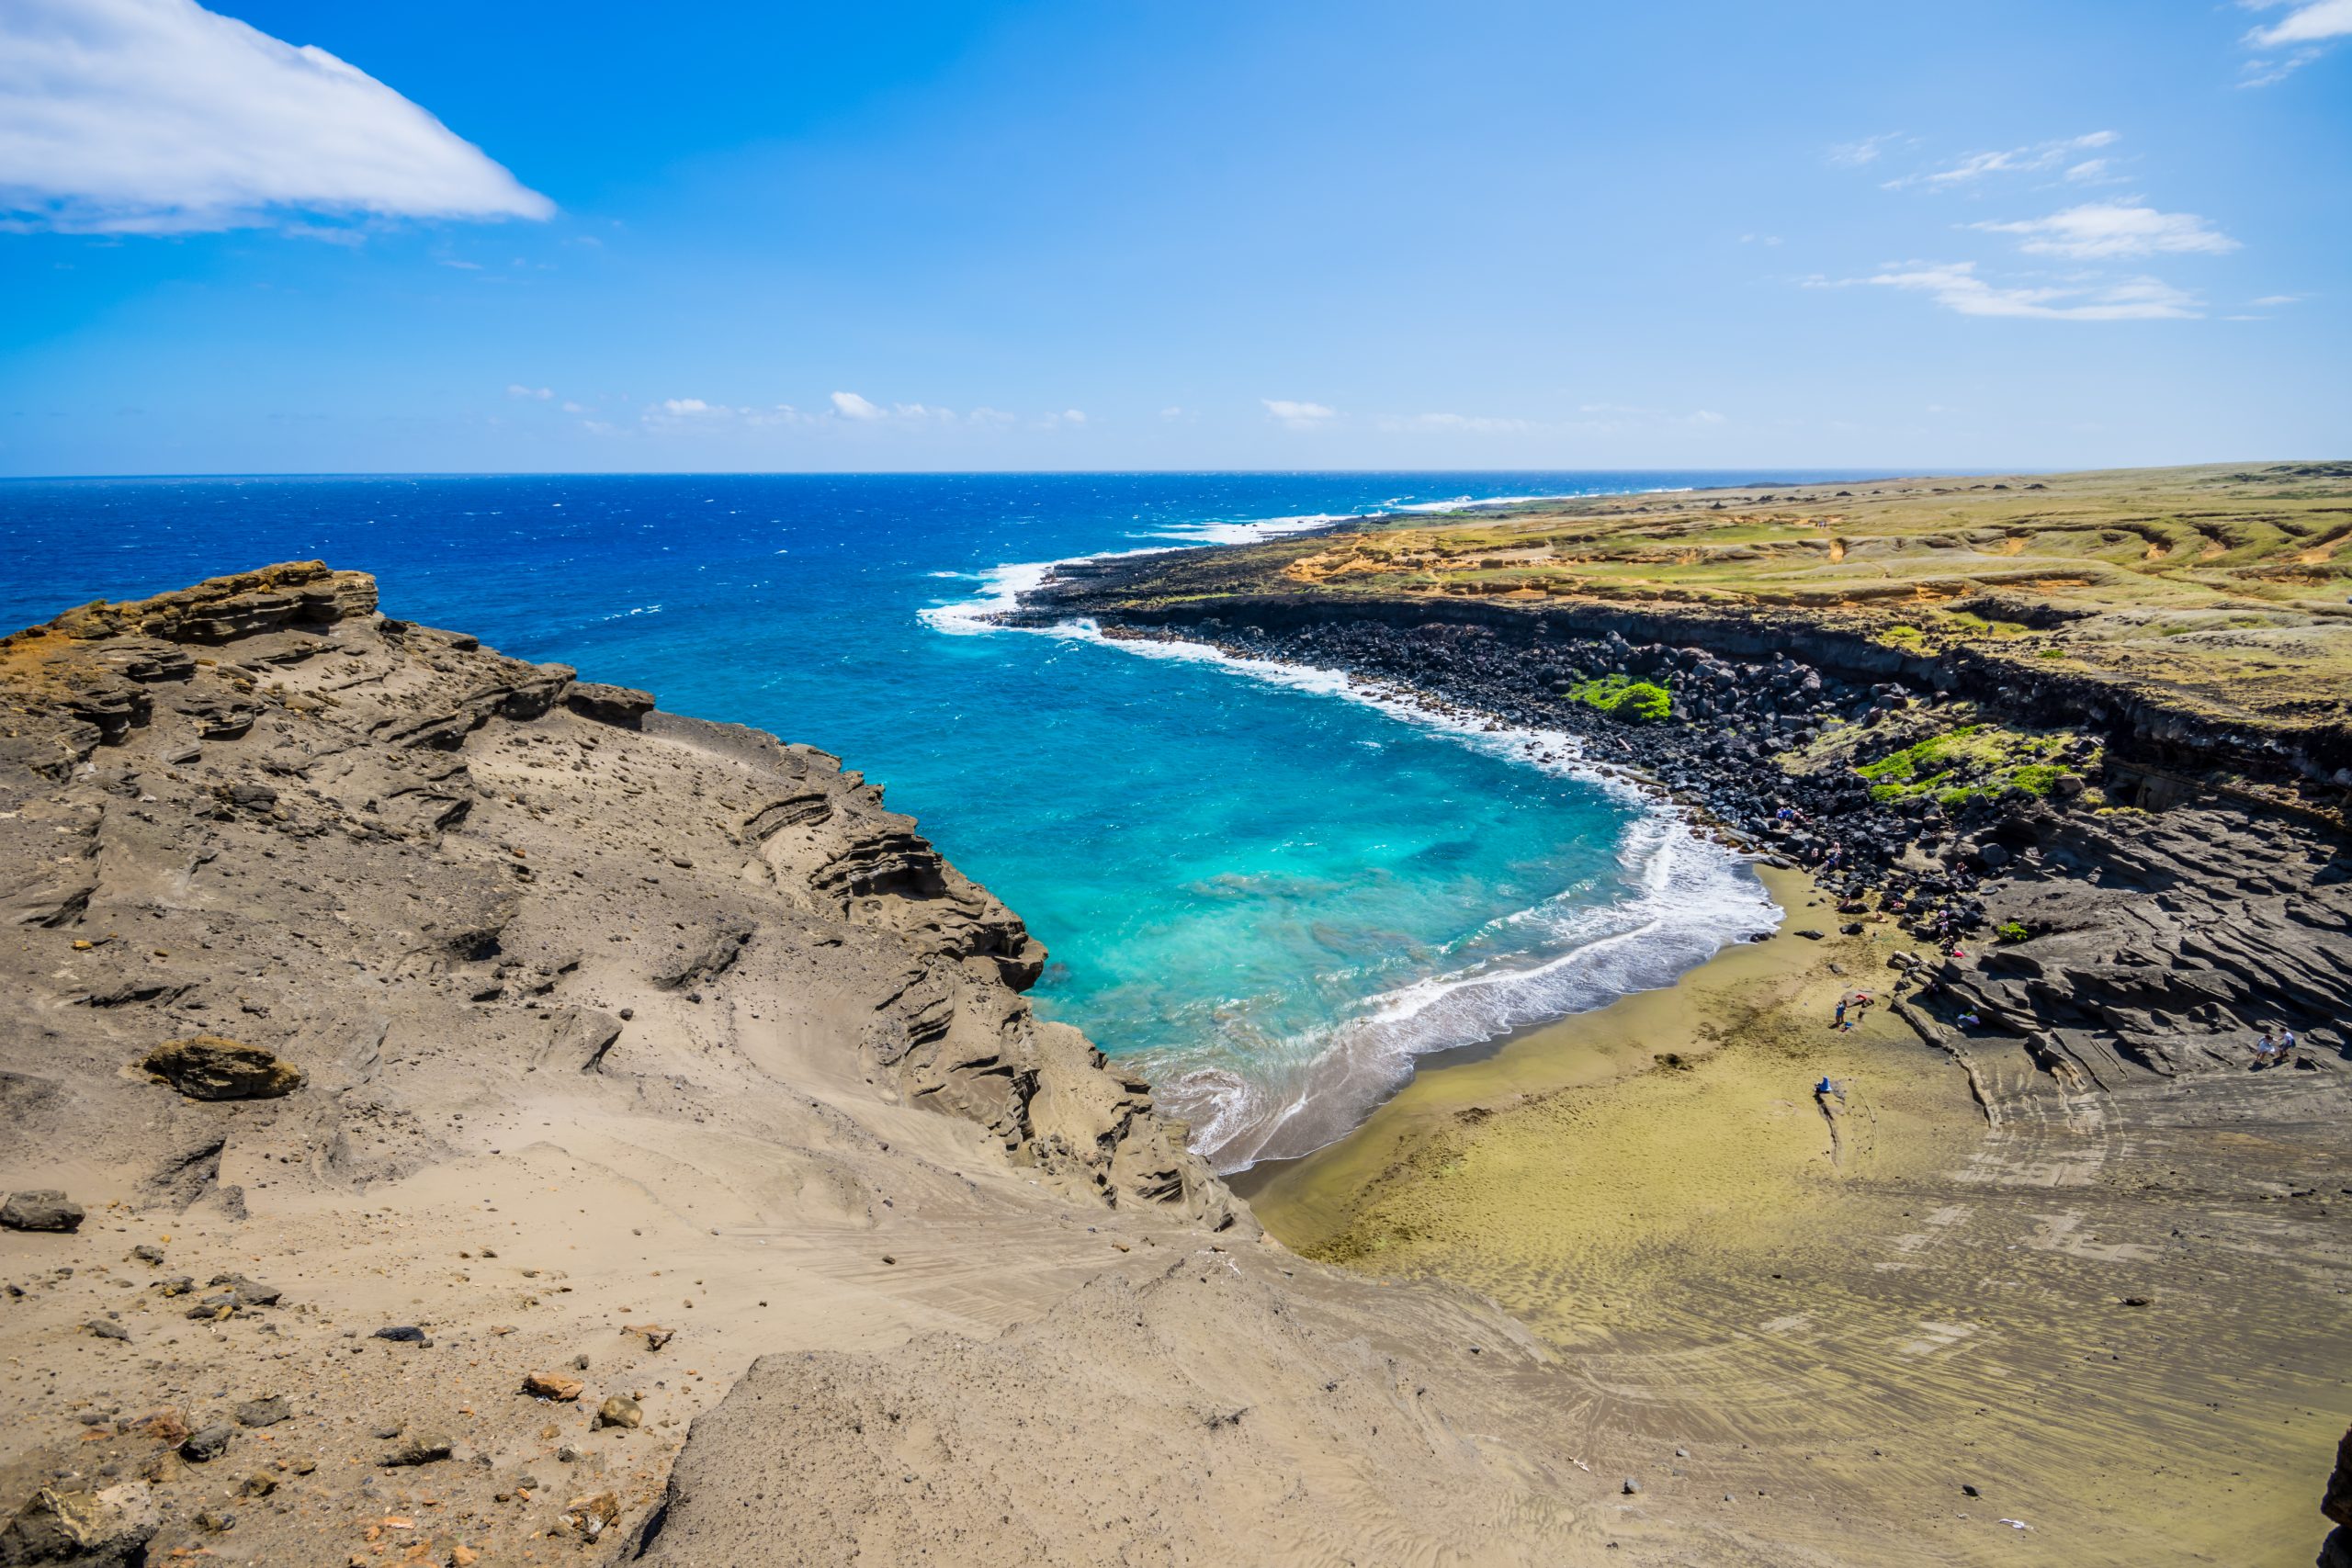 Bunte Reiseziele weltweit - der Papakolea Beach oder Green Sand Beach auf Hawaii